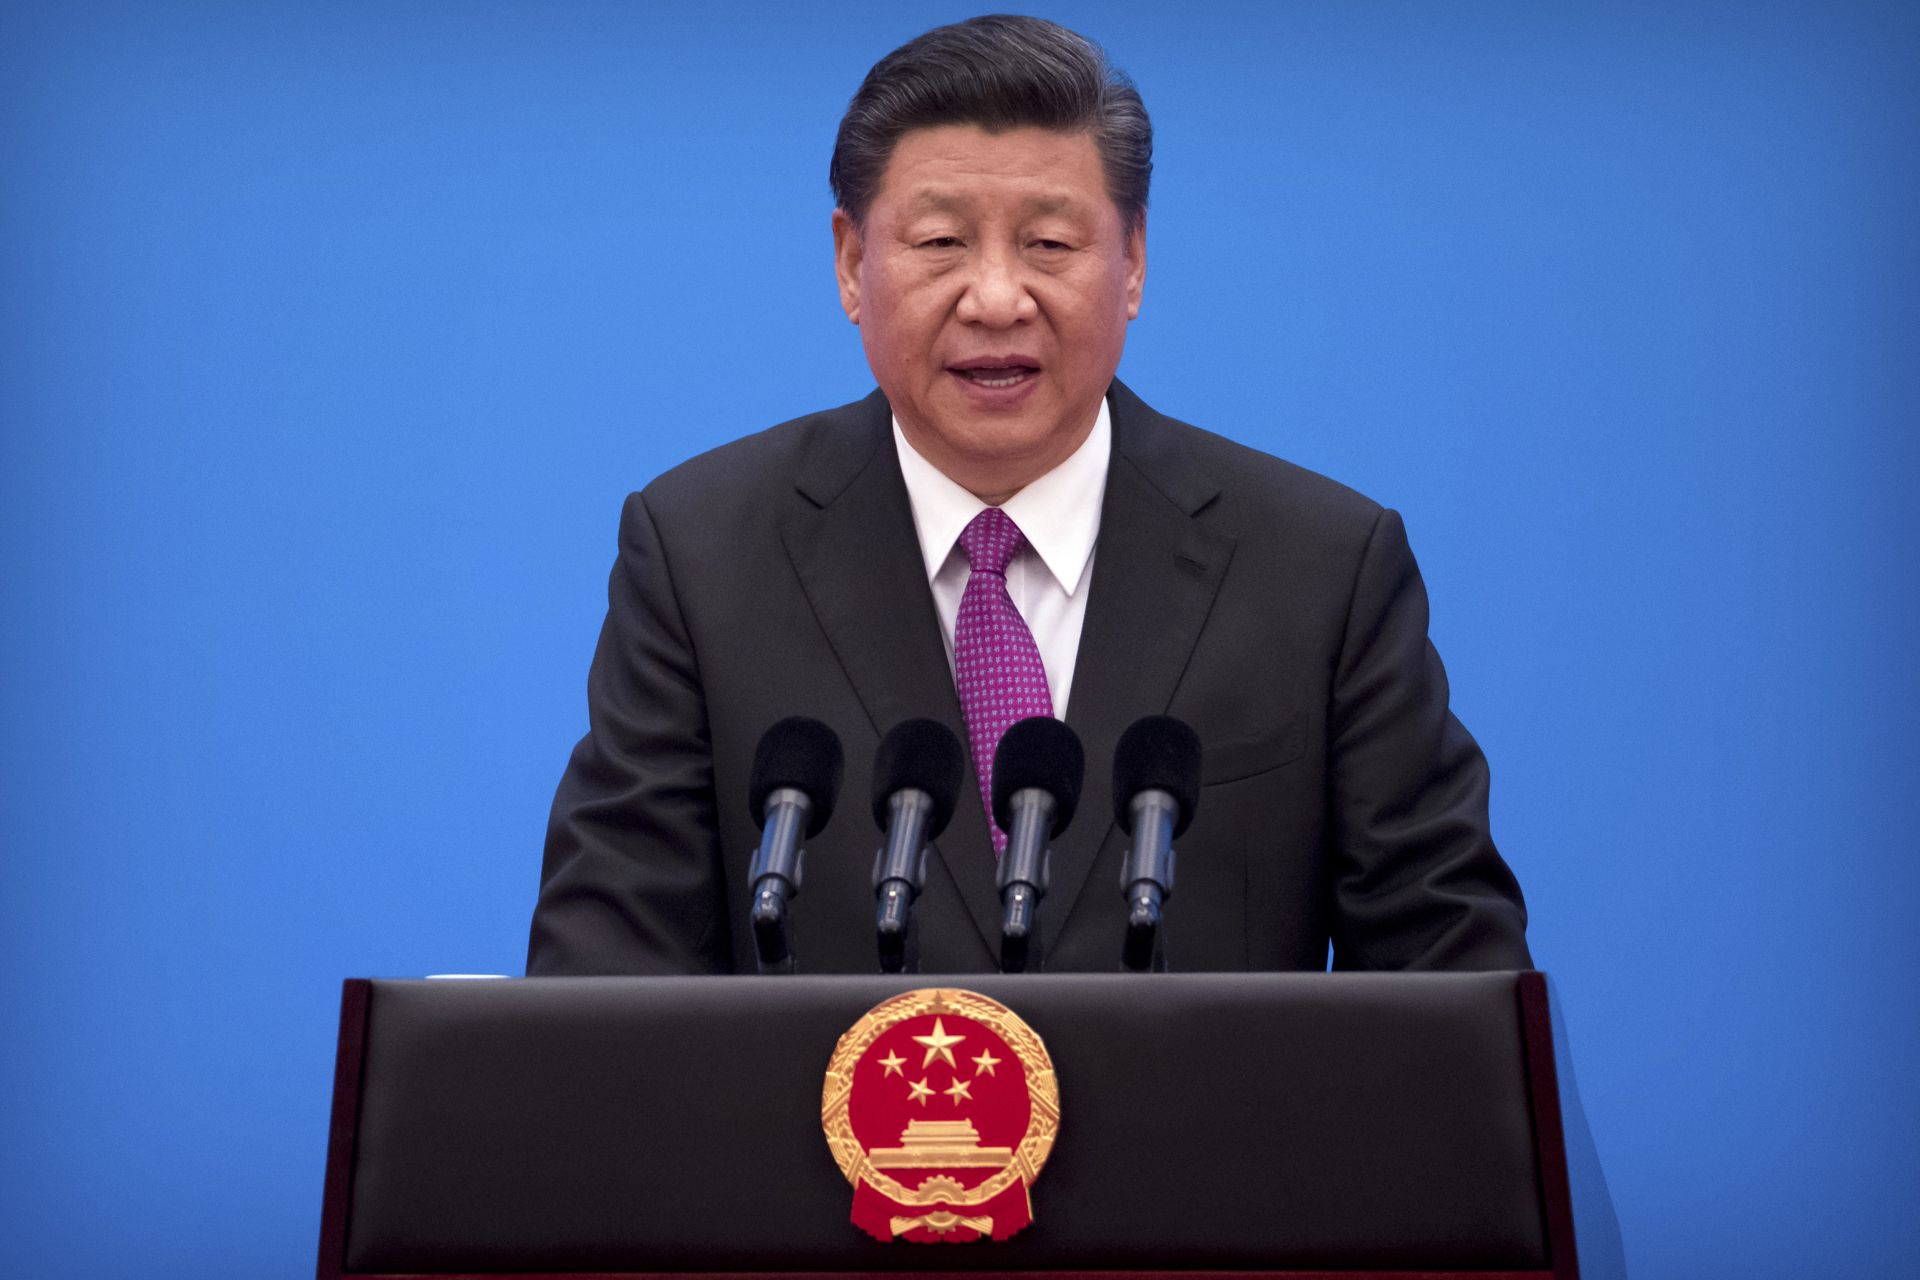 Този гигантски инфраструктурен проект ще наблегне на "отворено, чисто и зелено развитие", каза китайският президент Си Цзинпин